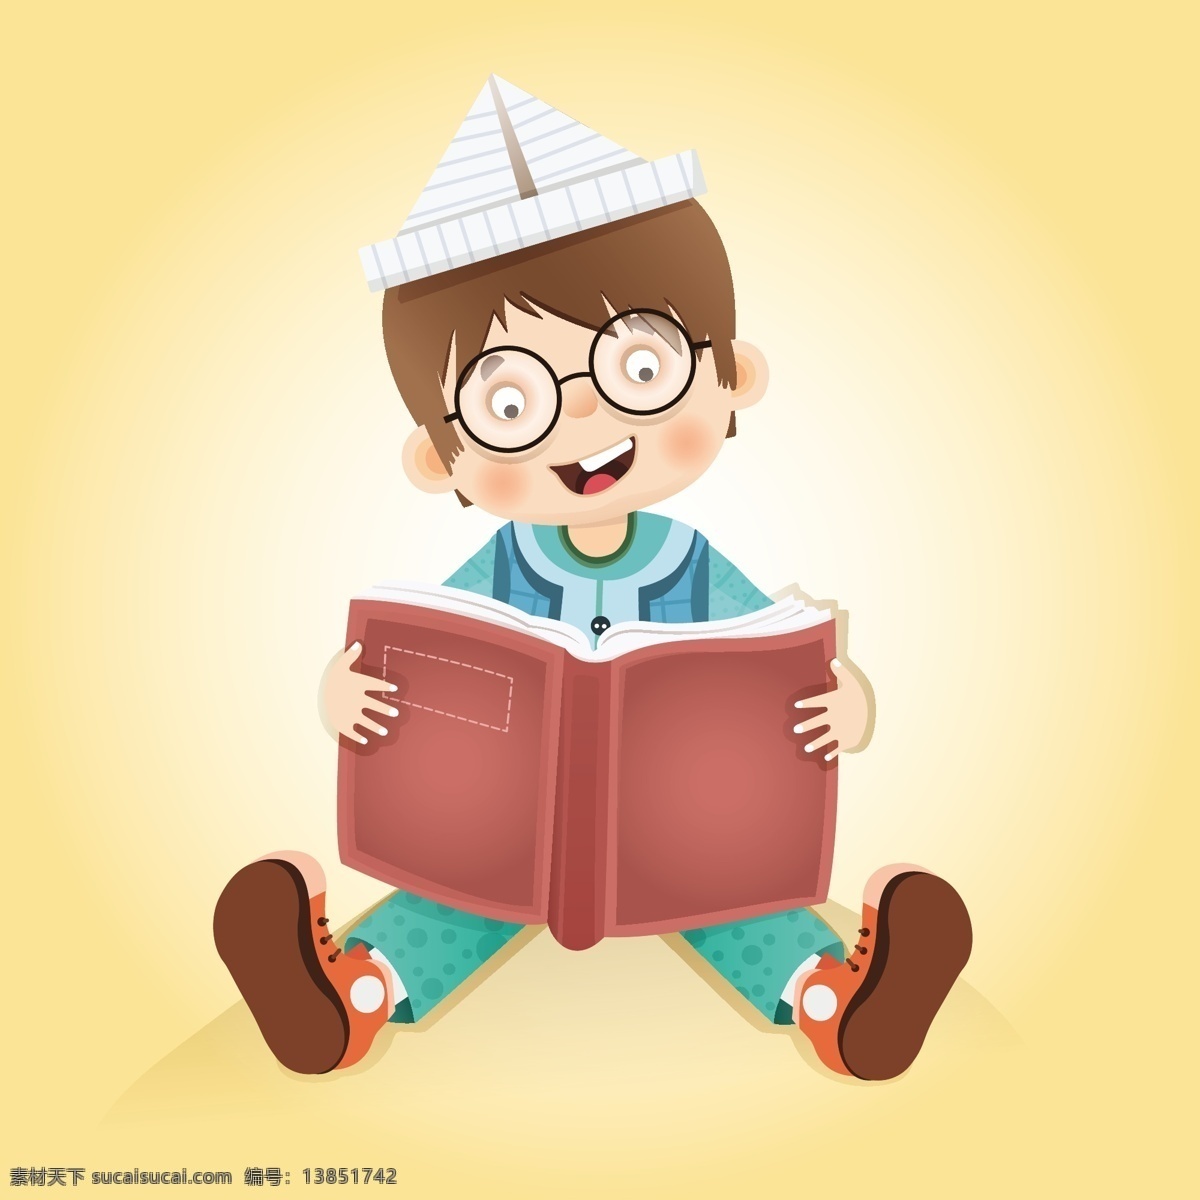 带 纸 帽子 正在 看书 男孩 矢量 模板下载 纸帽子 折纸 学生 卡通人物 书籍 办公学习 生活百科 矢量素材 黄色